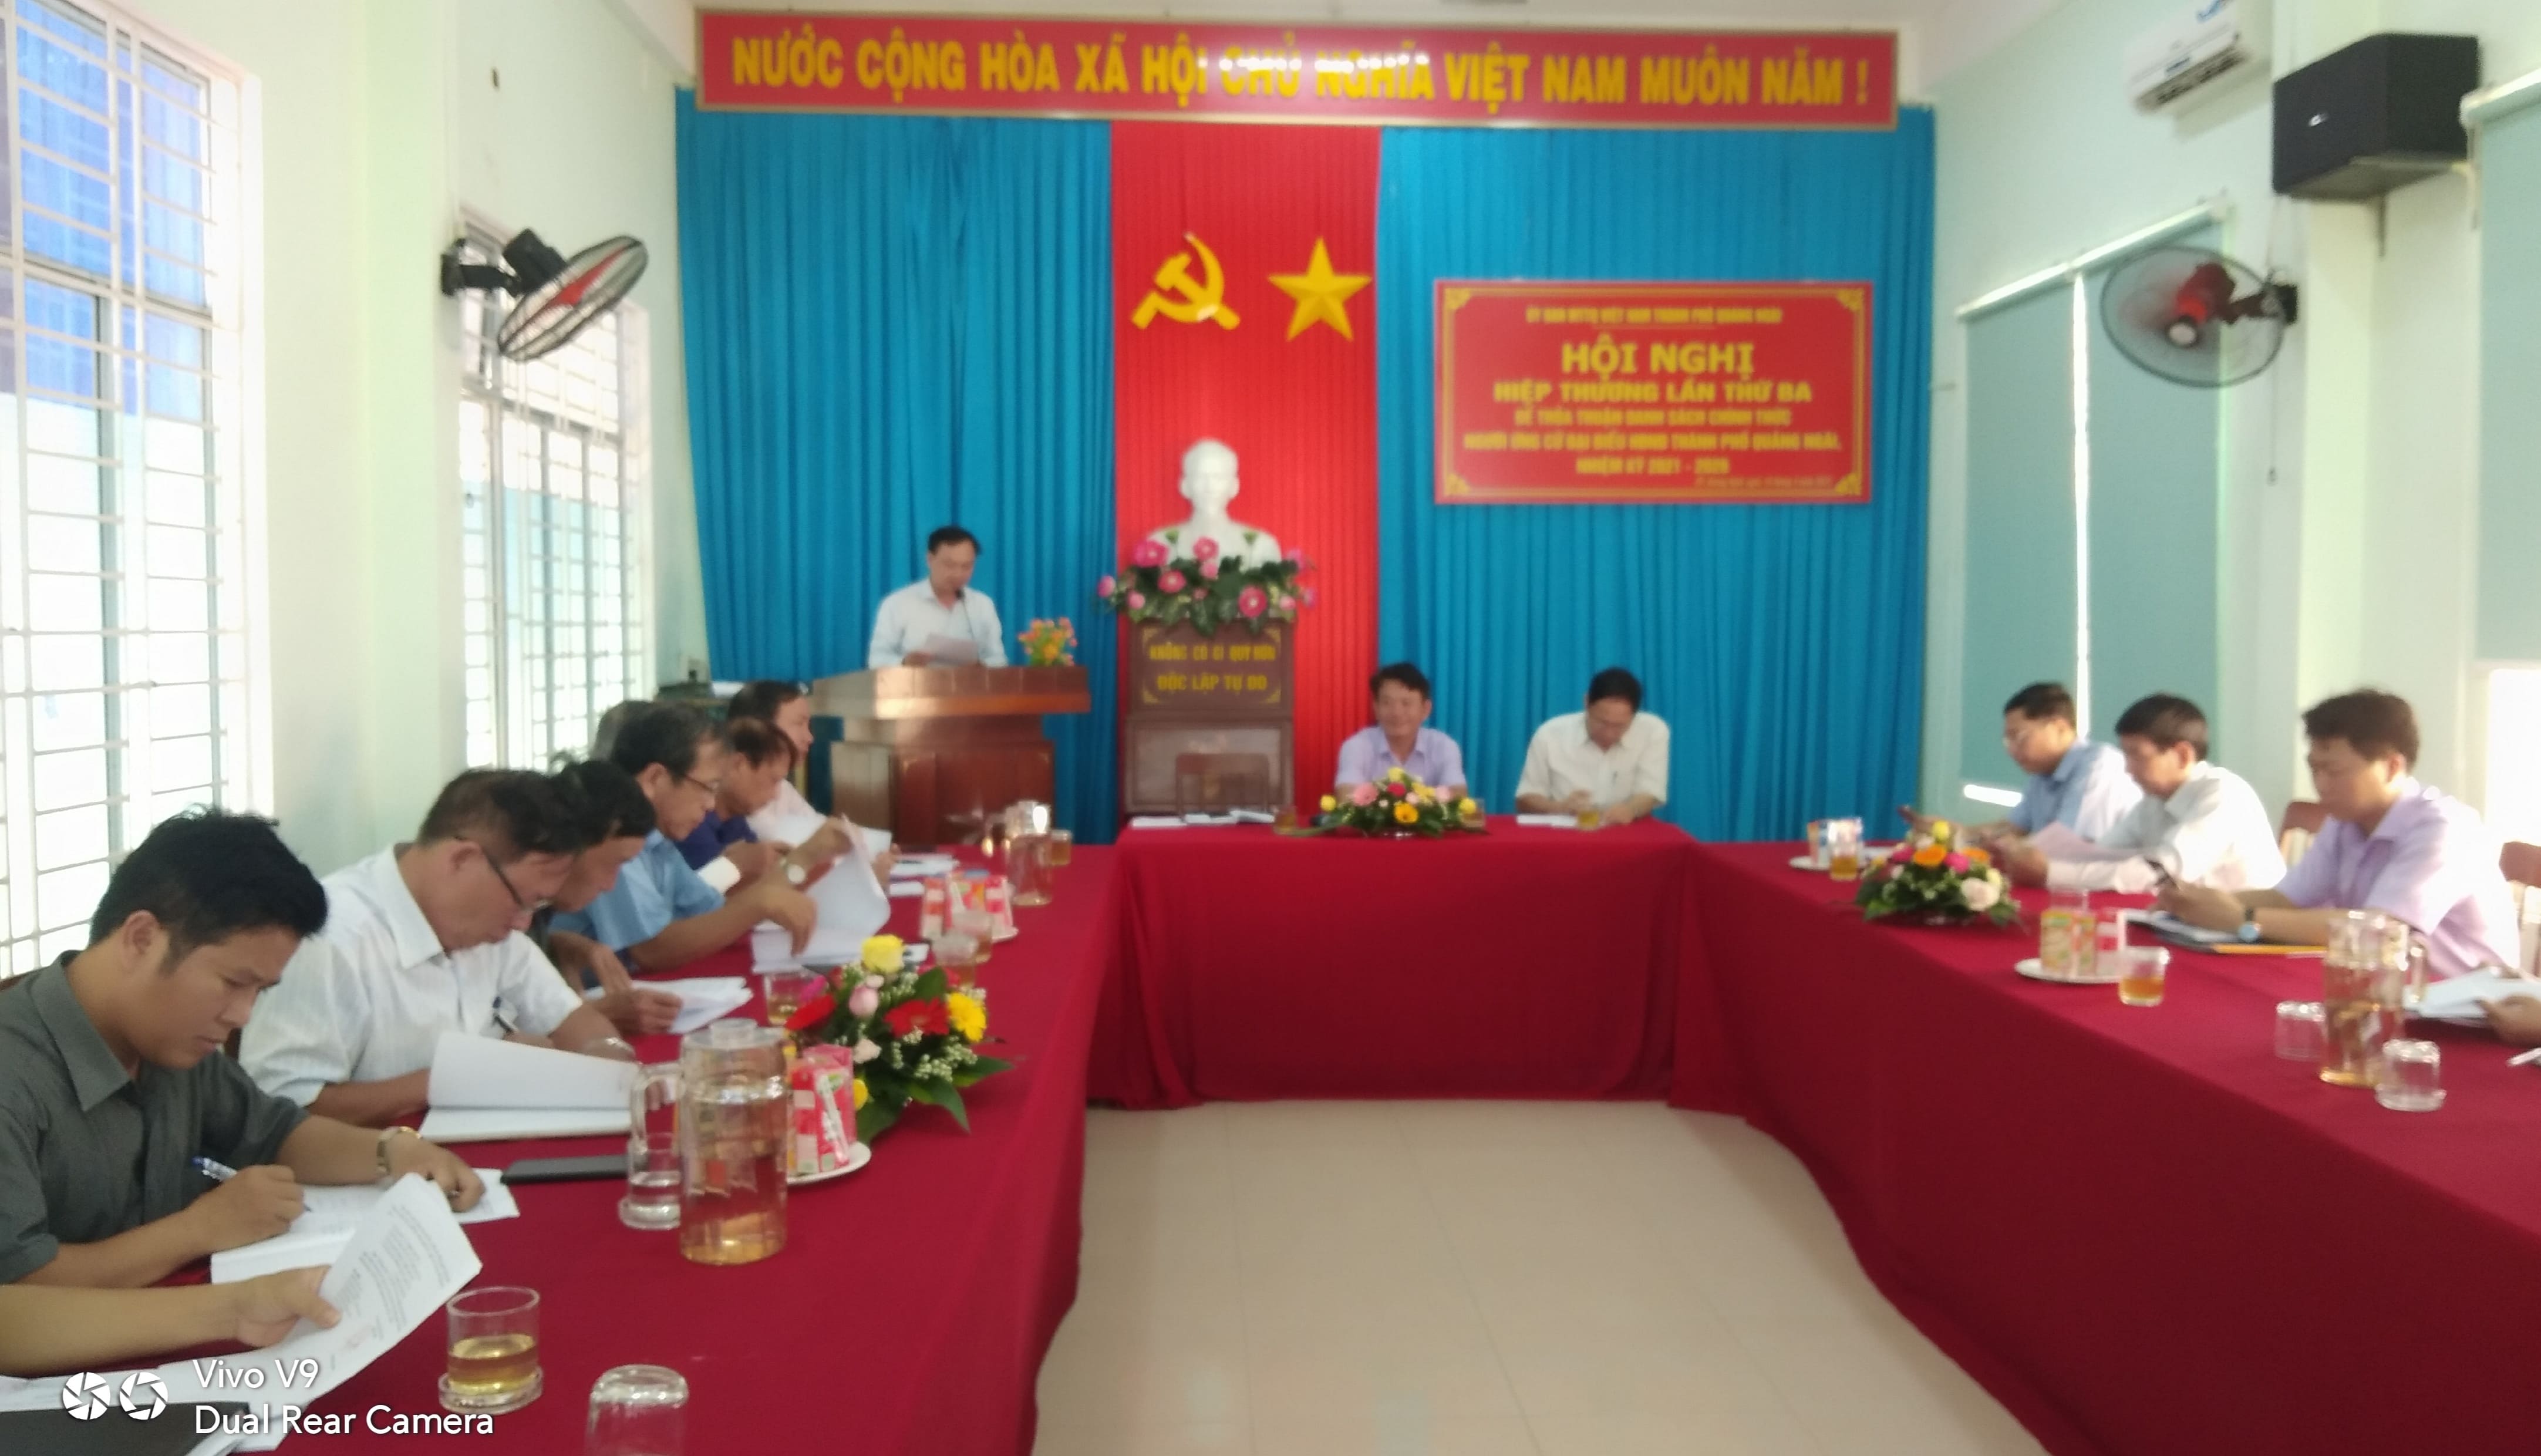 Mặt trận Tổ Quốc Việt Nam thành phố hội nghị hiệp thương lần 3, thống nhất danh sách 59 người ứng cử Đại biểu HĐND thành phố nhiệm kỳ 2021-2026